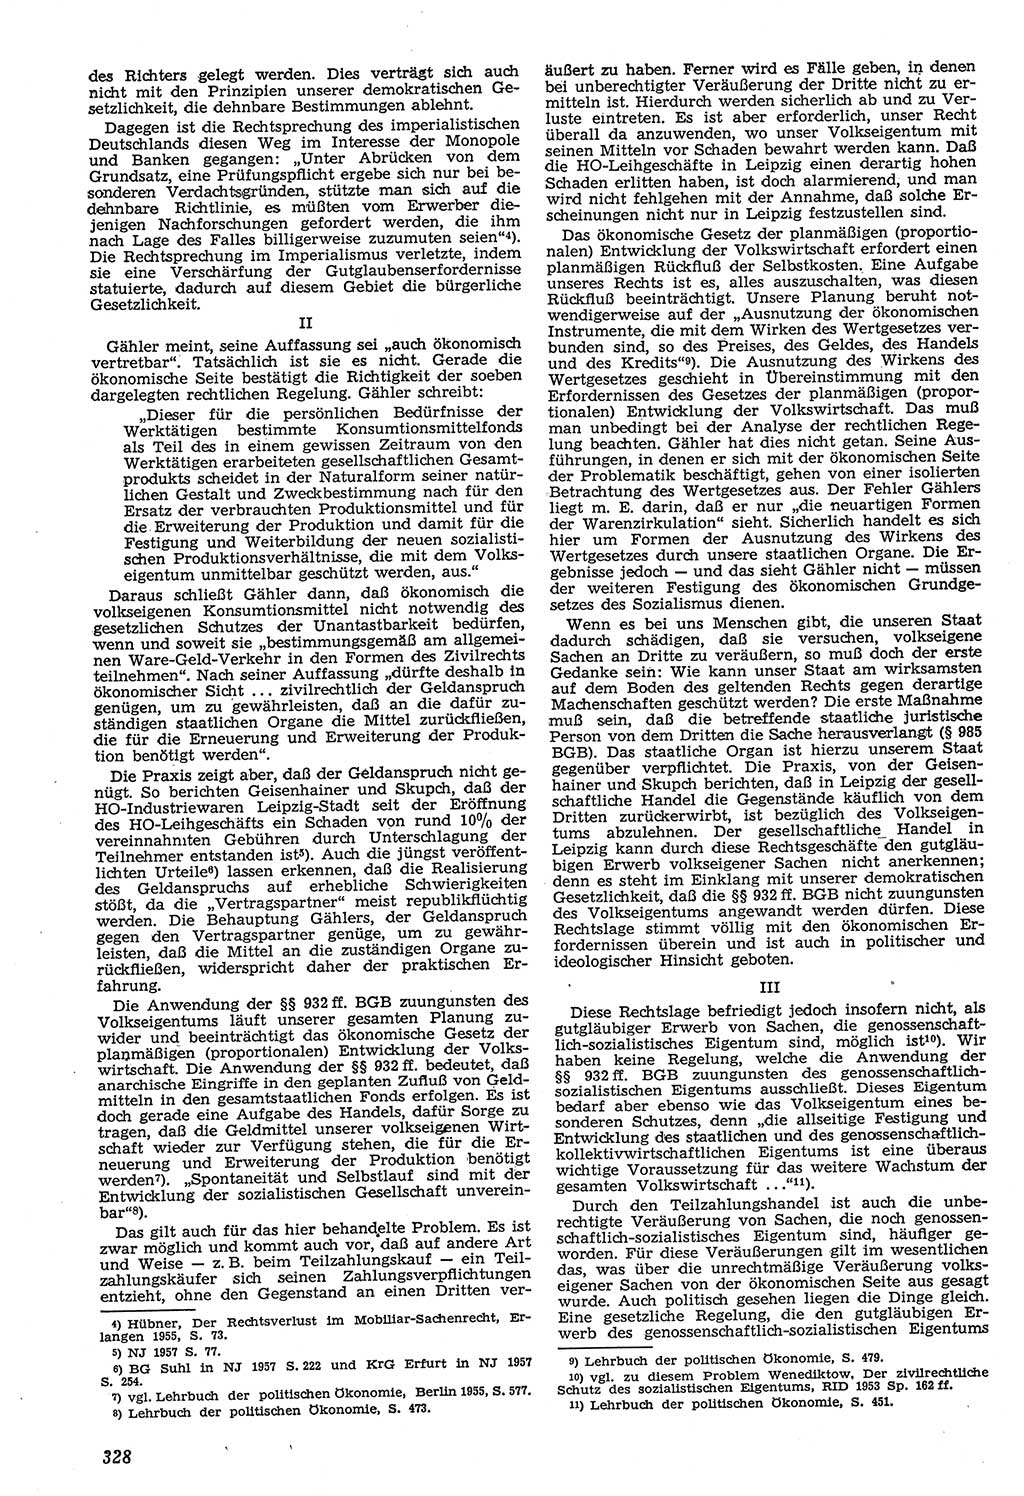 Neue Justiz (NJ), Zeitschrift für Recht und Rechtswissenschaft [Deutsche Demokratische Republik (DDR)], 11. Jahrgang 1957, Seite 328 (NJ DDR 1957, S. 328)